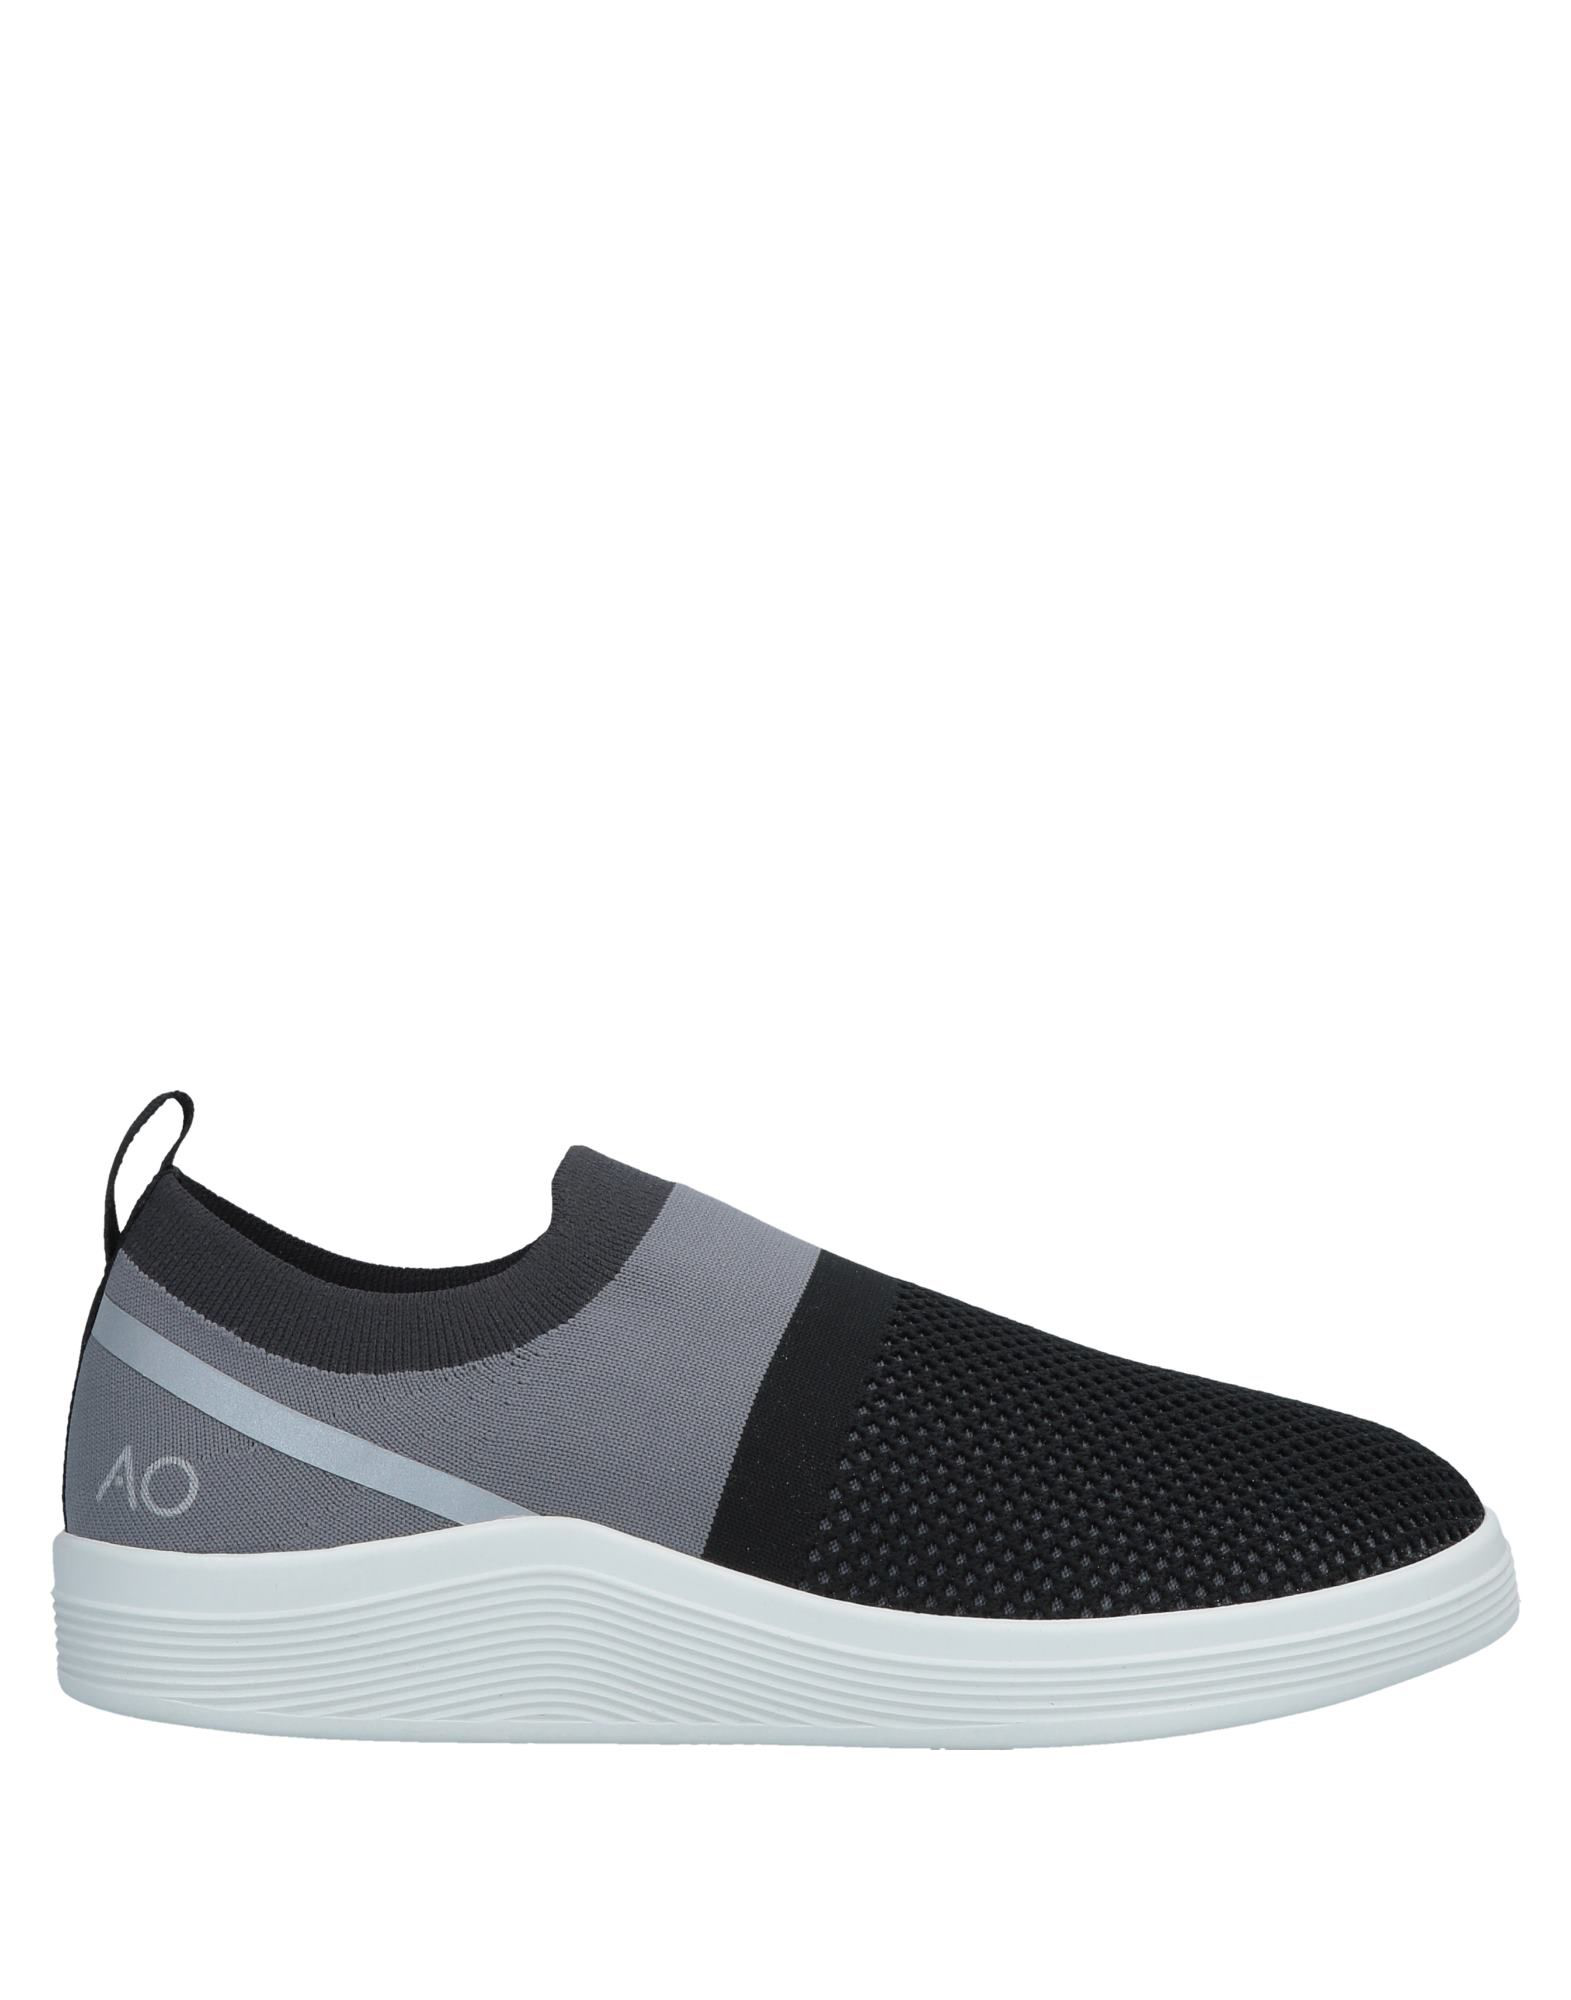 Adno ® Sneakers In Black | ModeSens